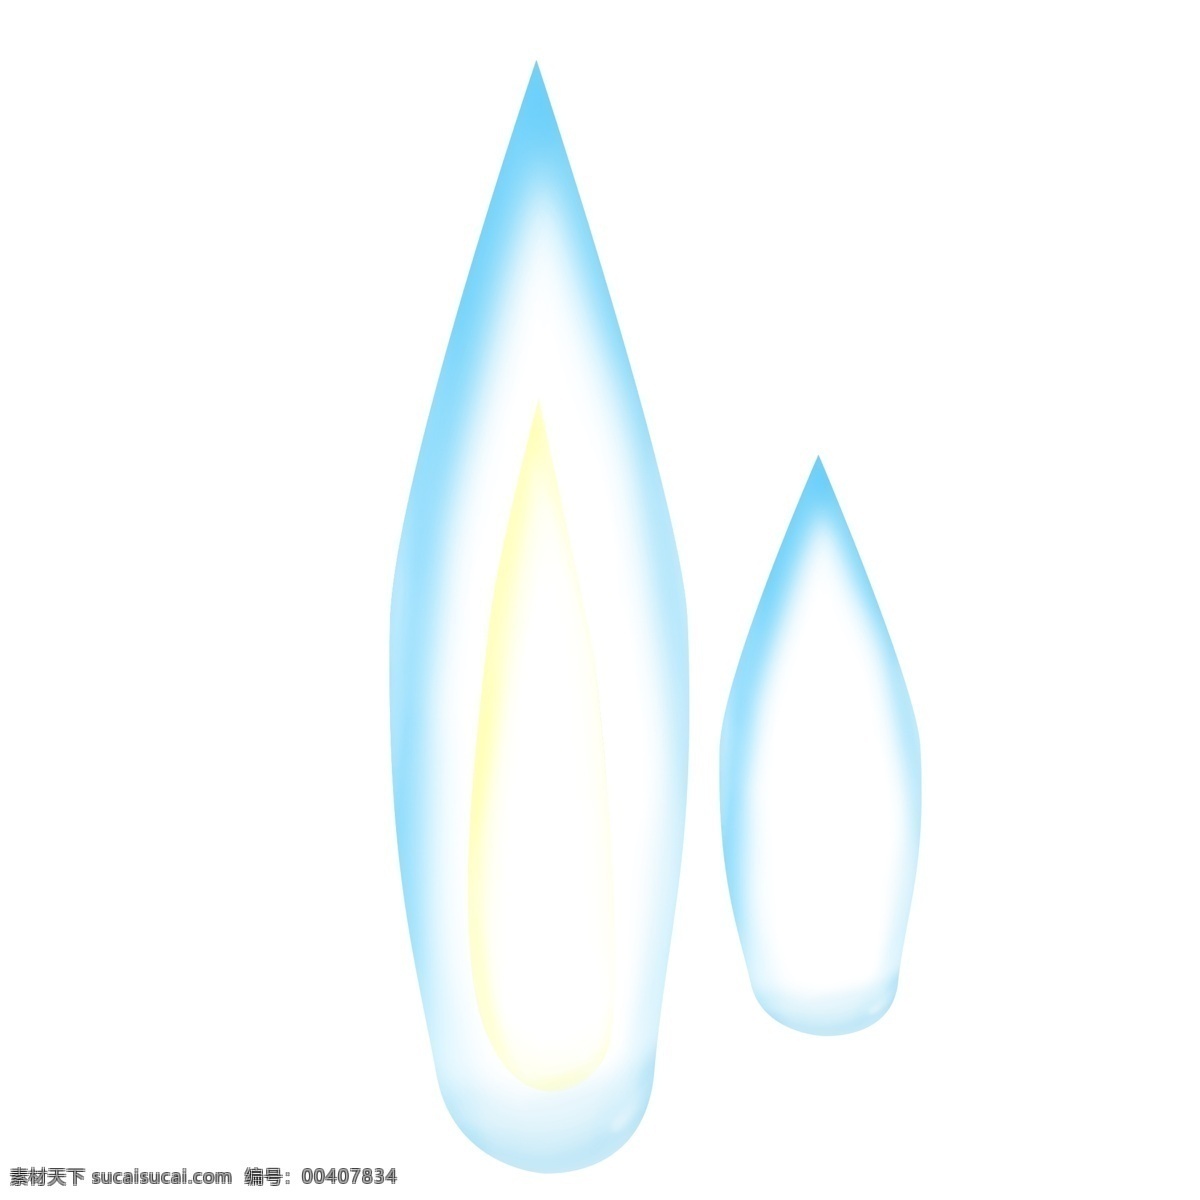 水滴 分 图 层 透明 质感 蓝色 纯 手绘 黄色 高光 原创 分图层 透明质感 纯手绘 大小水滴 半立体